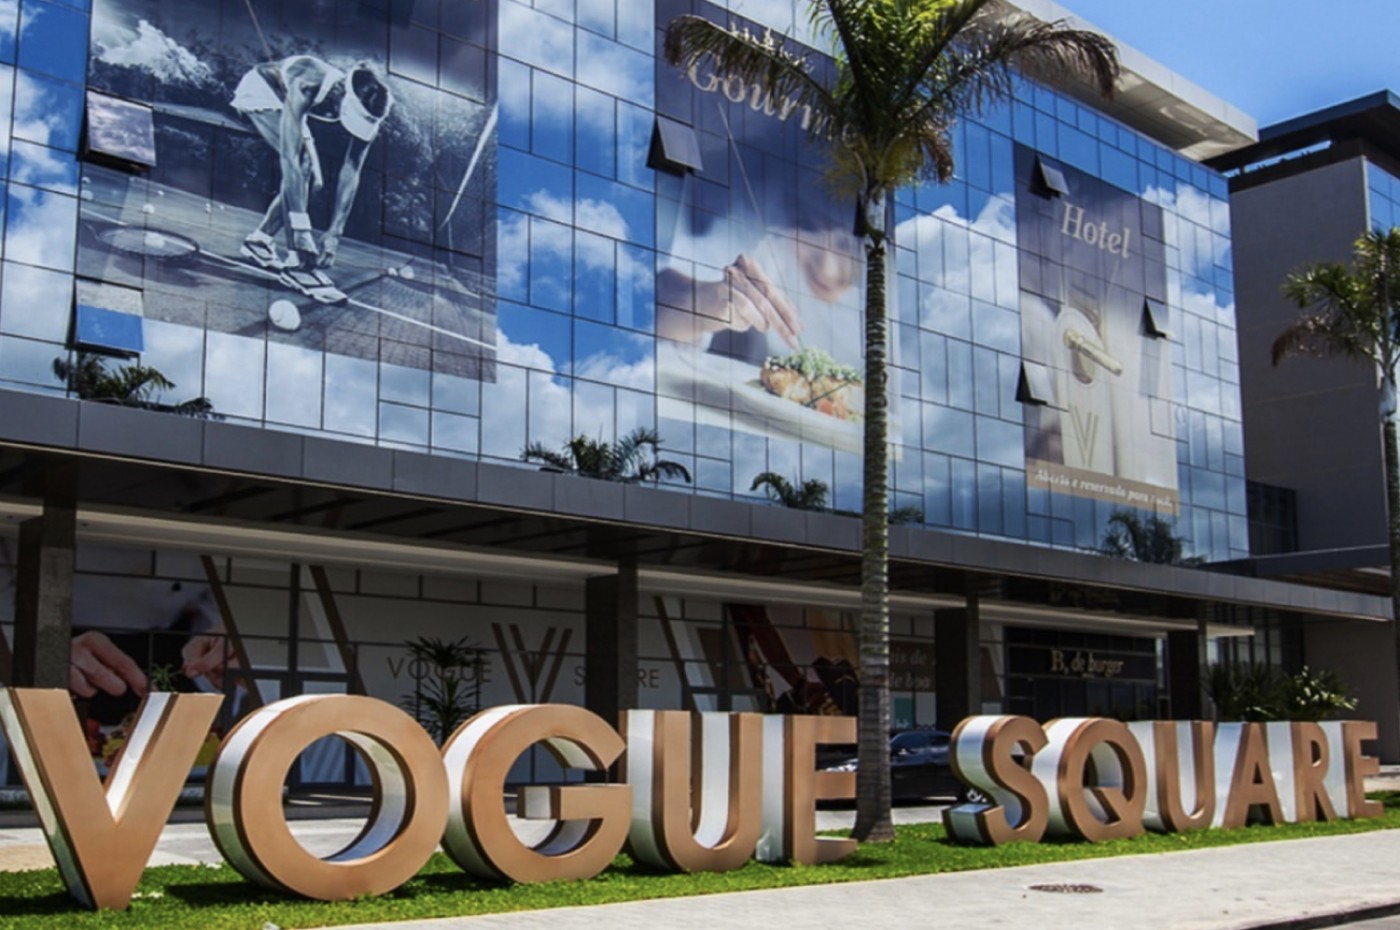 M Vogue Spa | Vogue Square